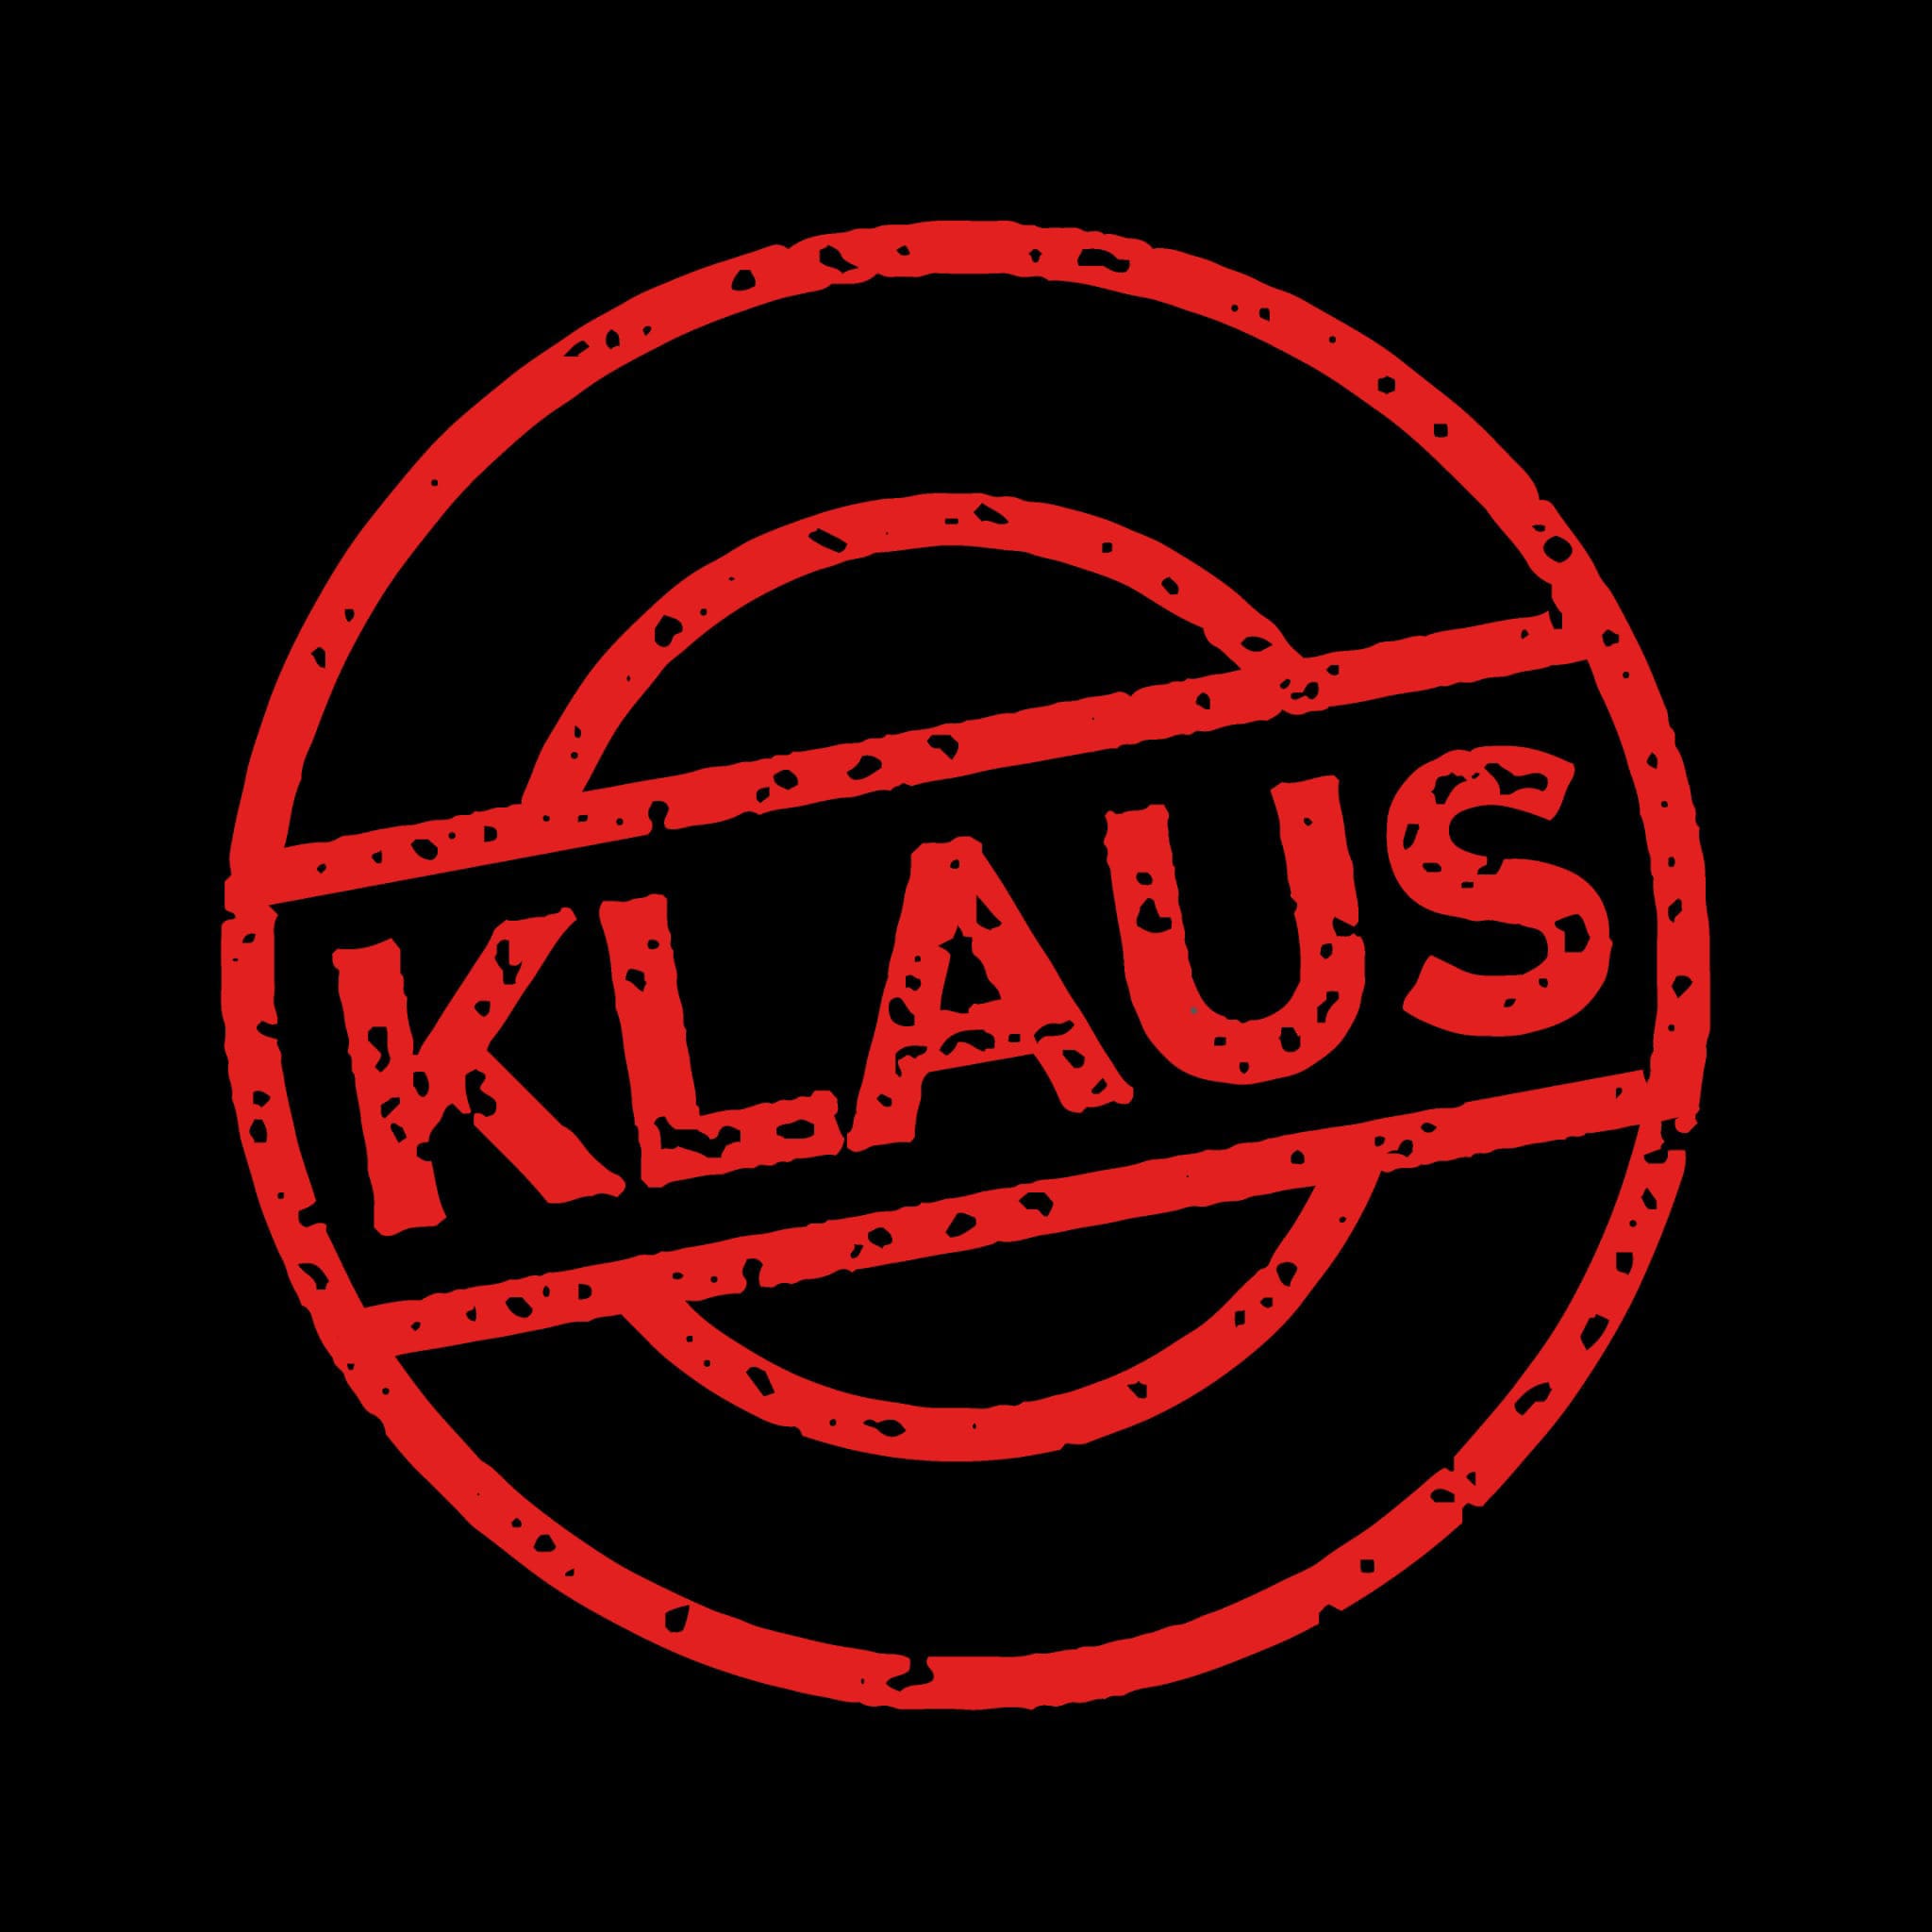 Klausur with Kollektiv KLAUS